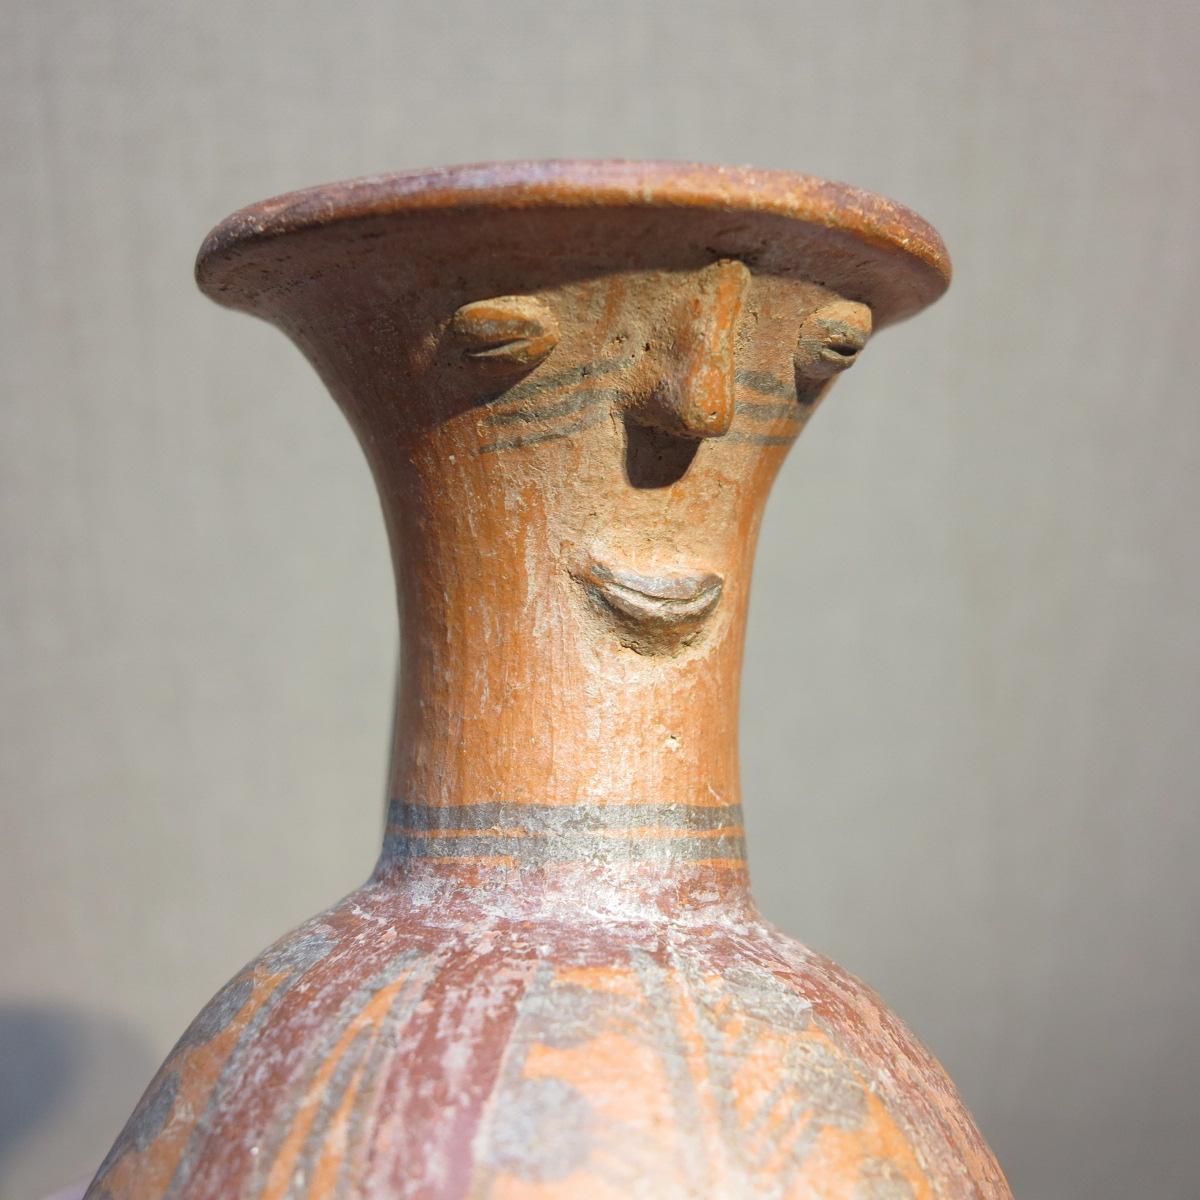 Chimu Inca c.1500 Peruvian terra-cotta anthropomorphic face vase vessel Peru - Art by Unknown